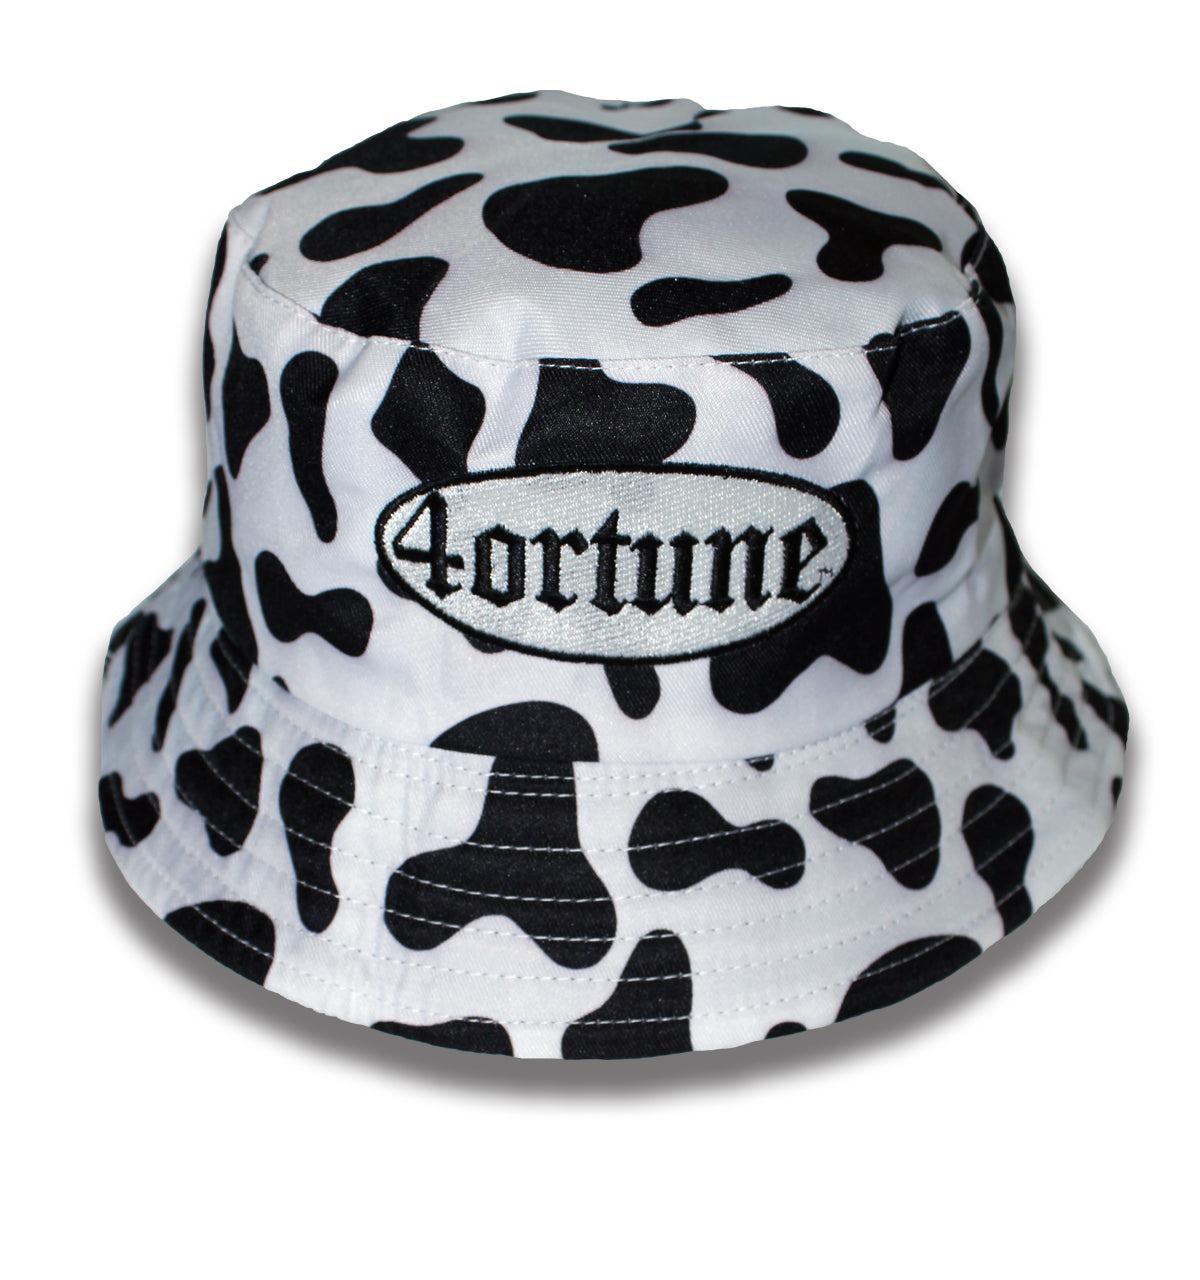 4ortune Cow Bucket Hat